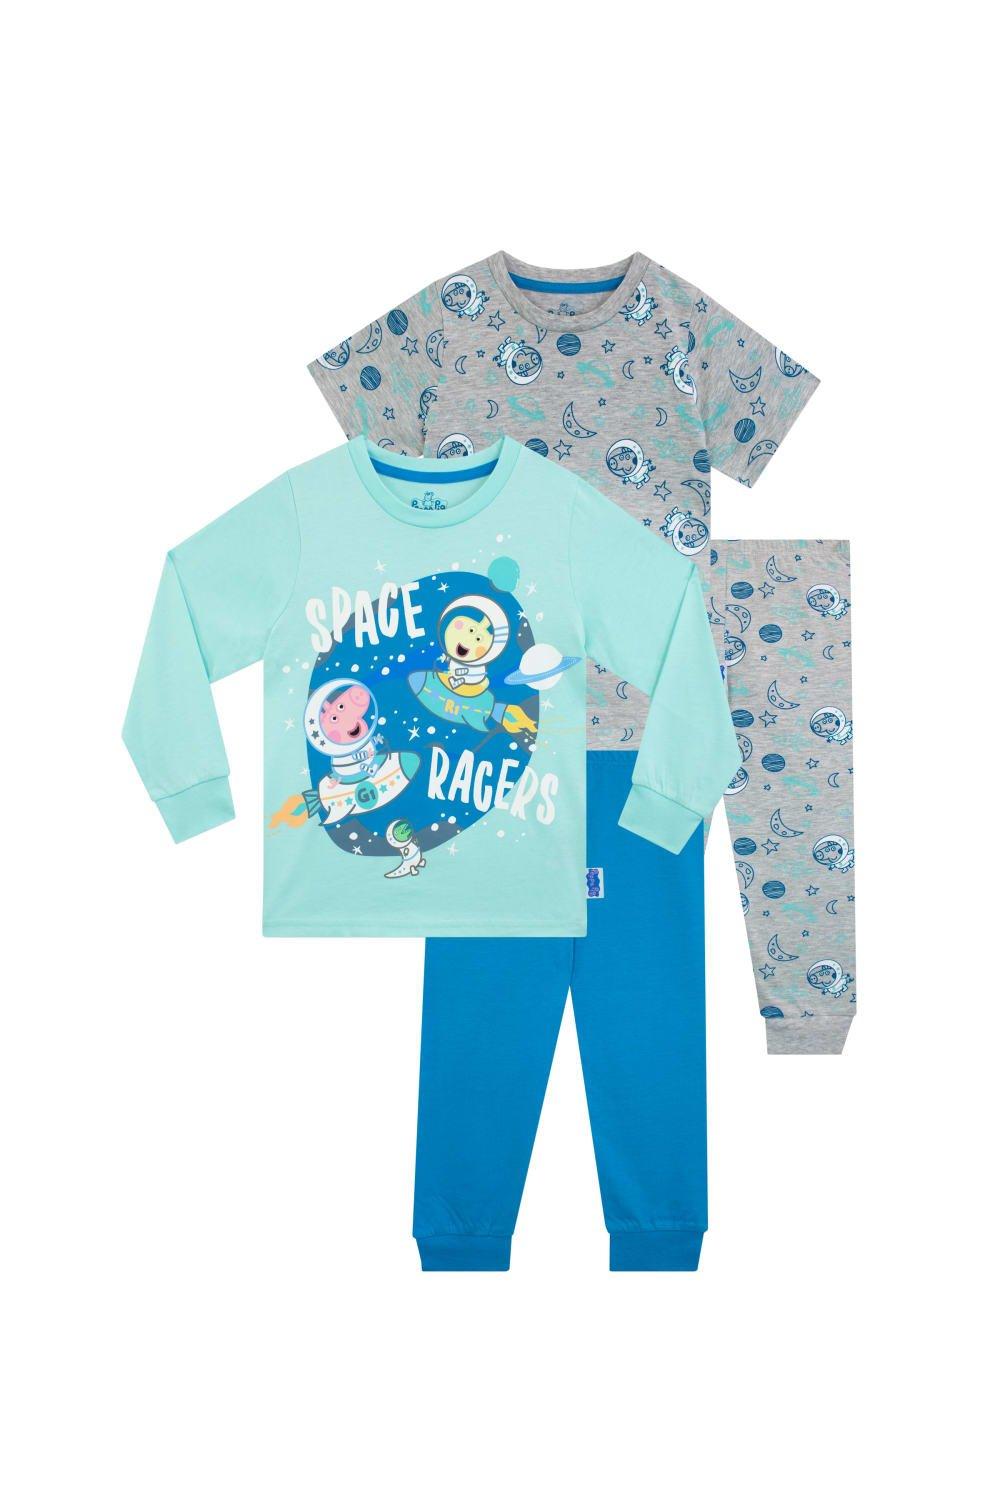 George Pig Space Racers Pyjamas 2 Pack